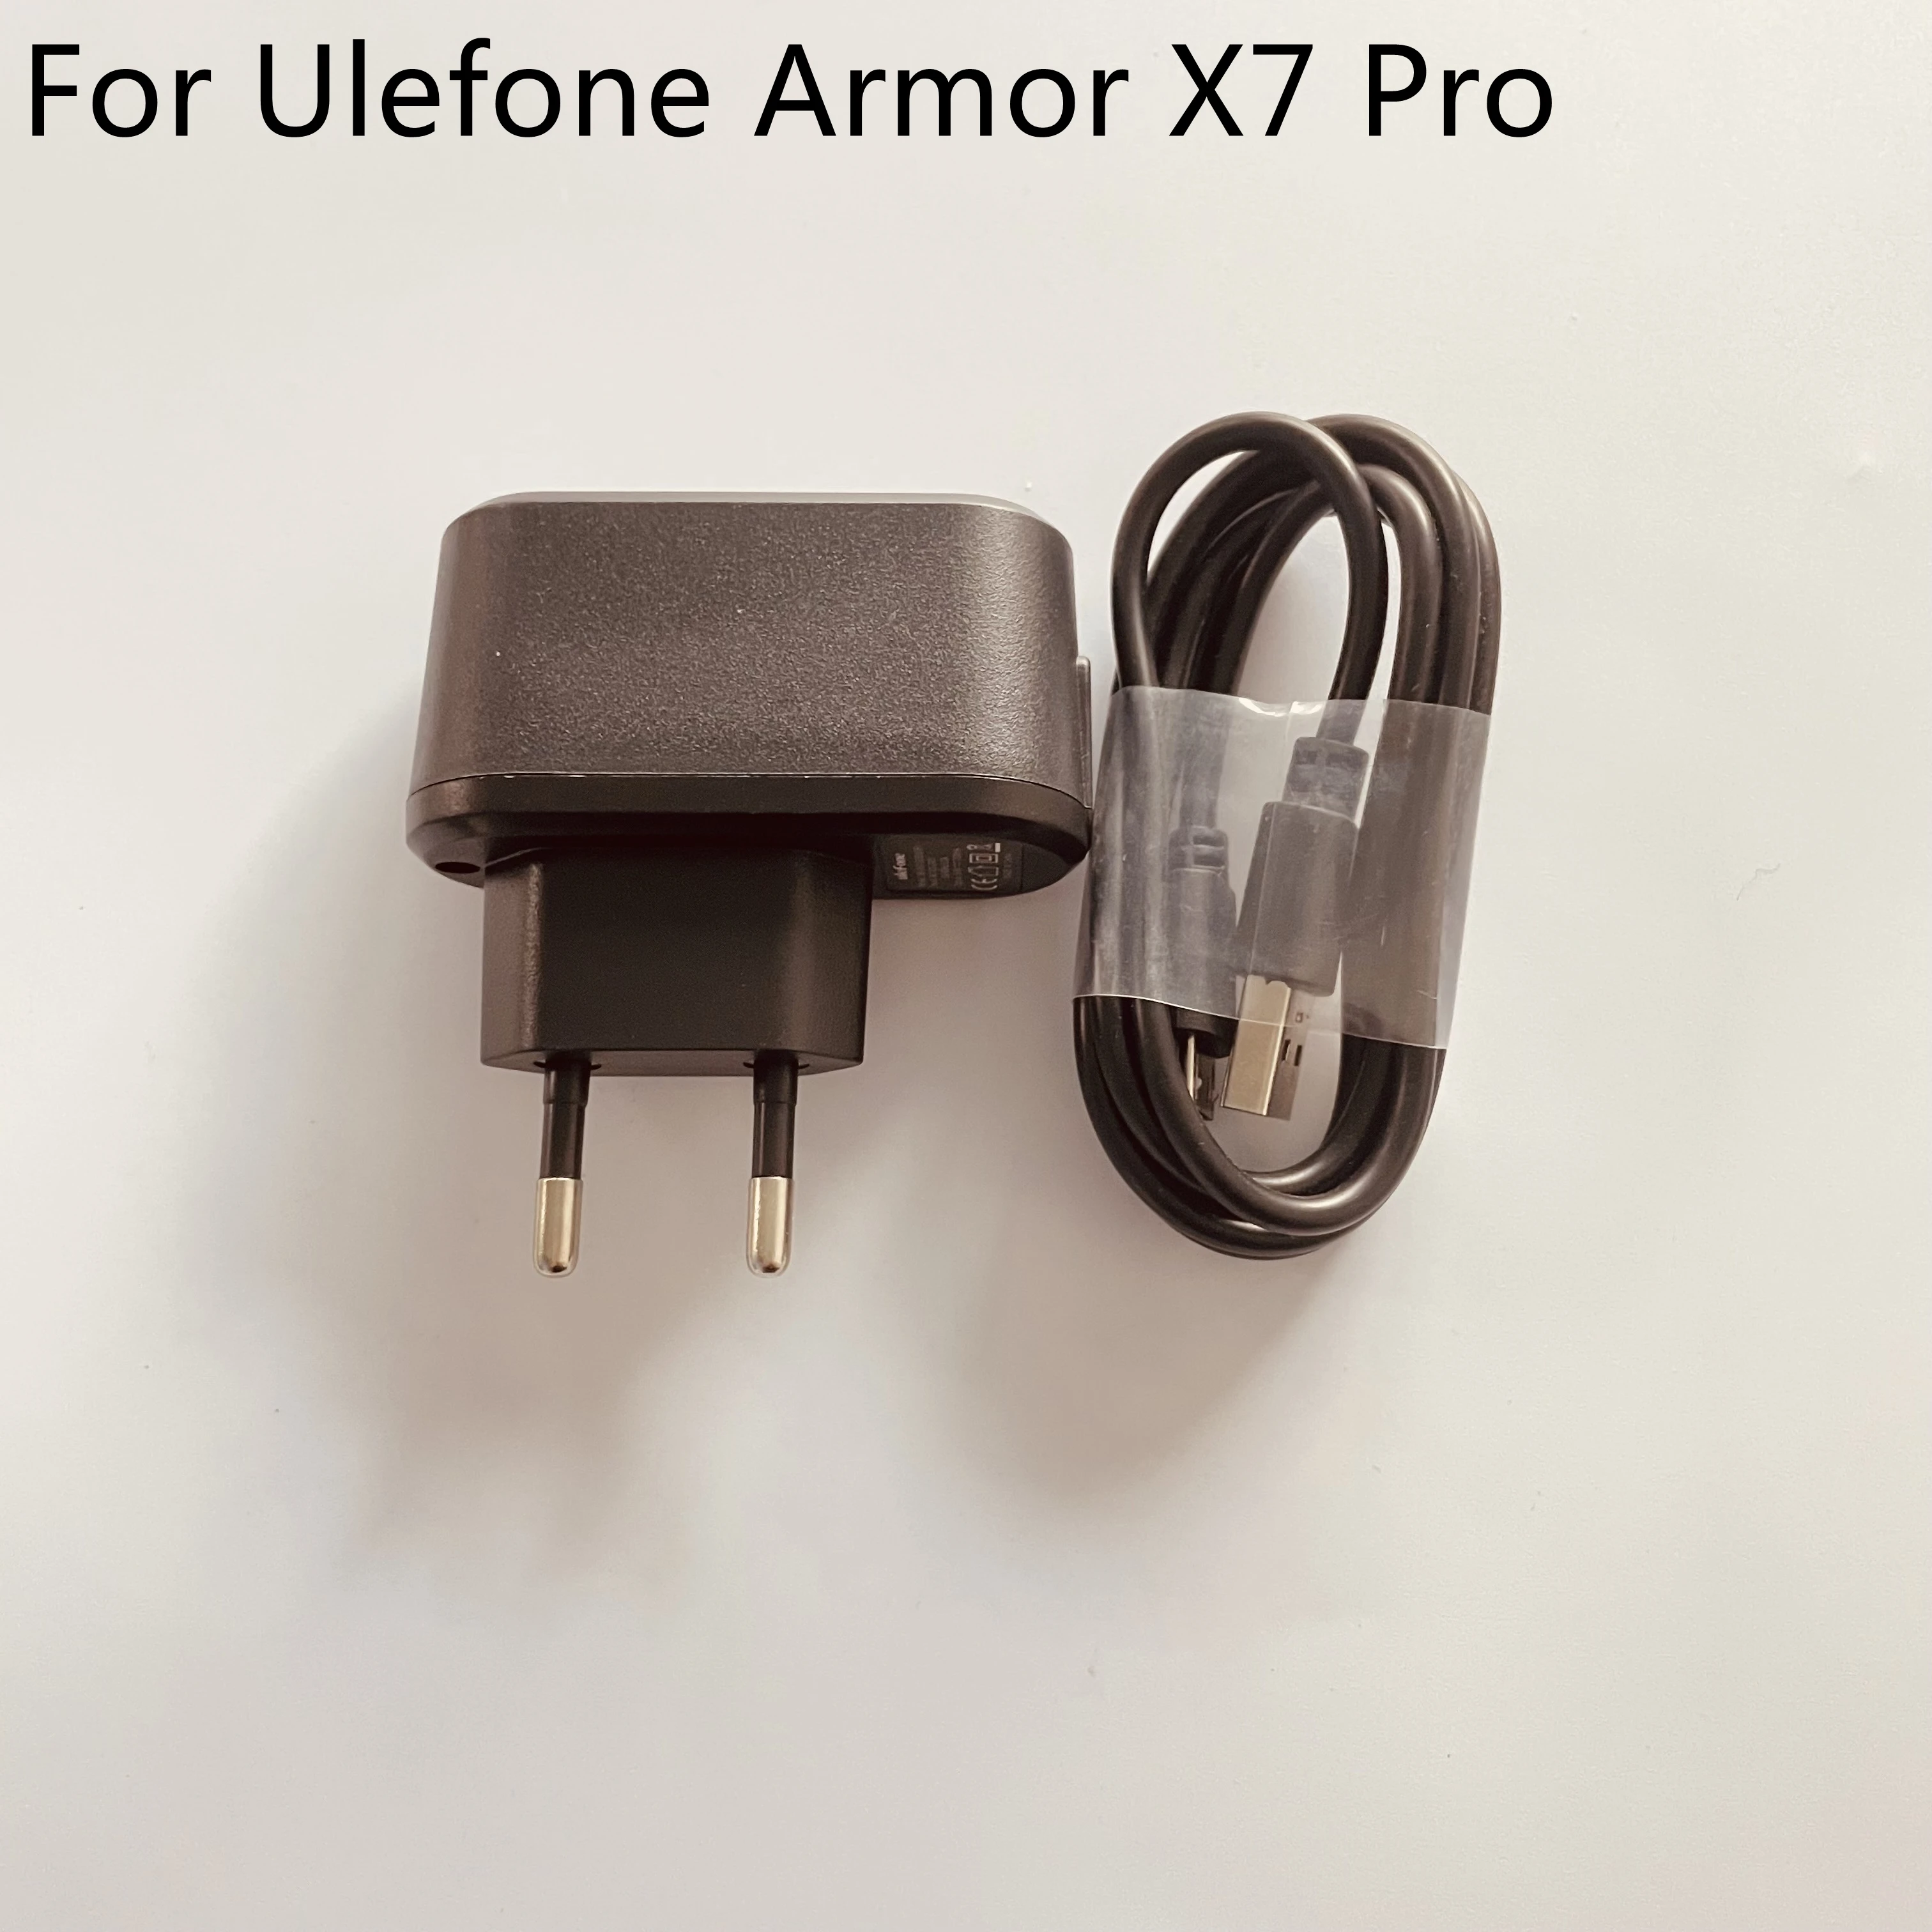 

Новое зарядное устройство для путешествий + USB-кабель для Ulefone Armor X7 Pro 5,0 дюйма MT6761VWE Smartphone, бесплатная доставка